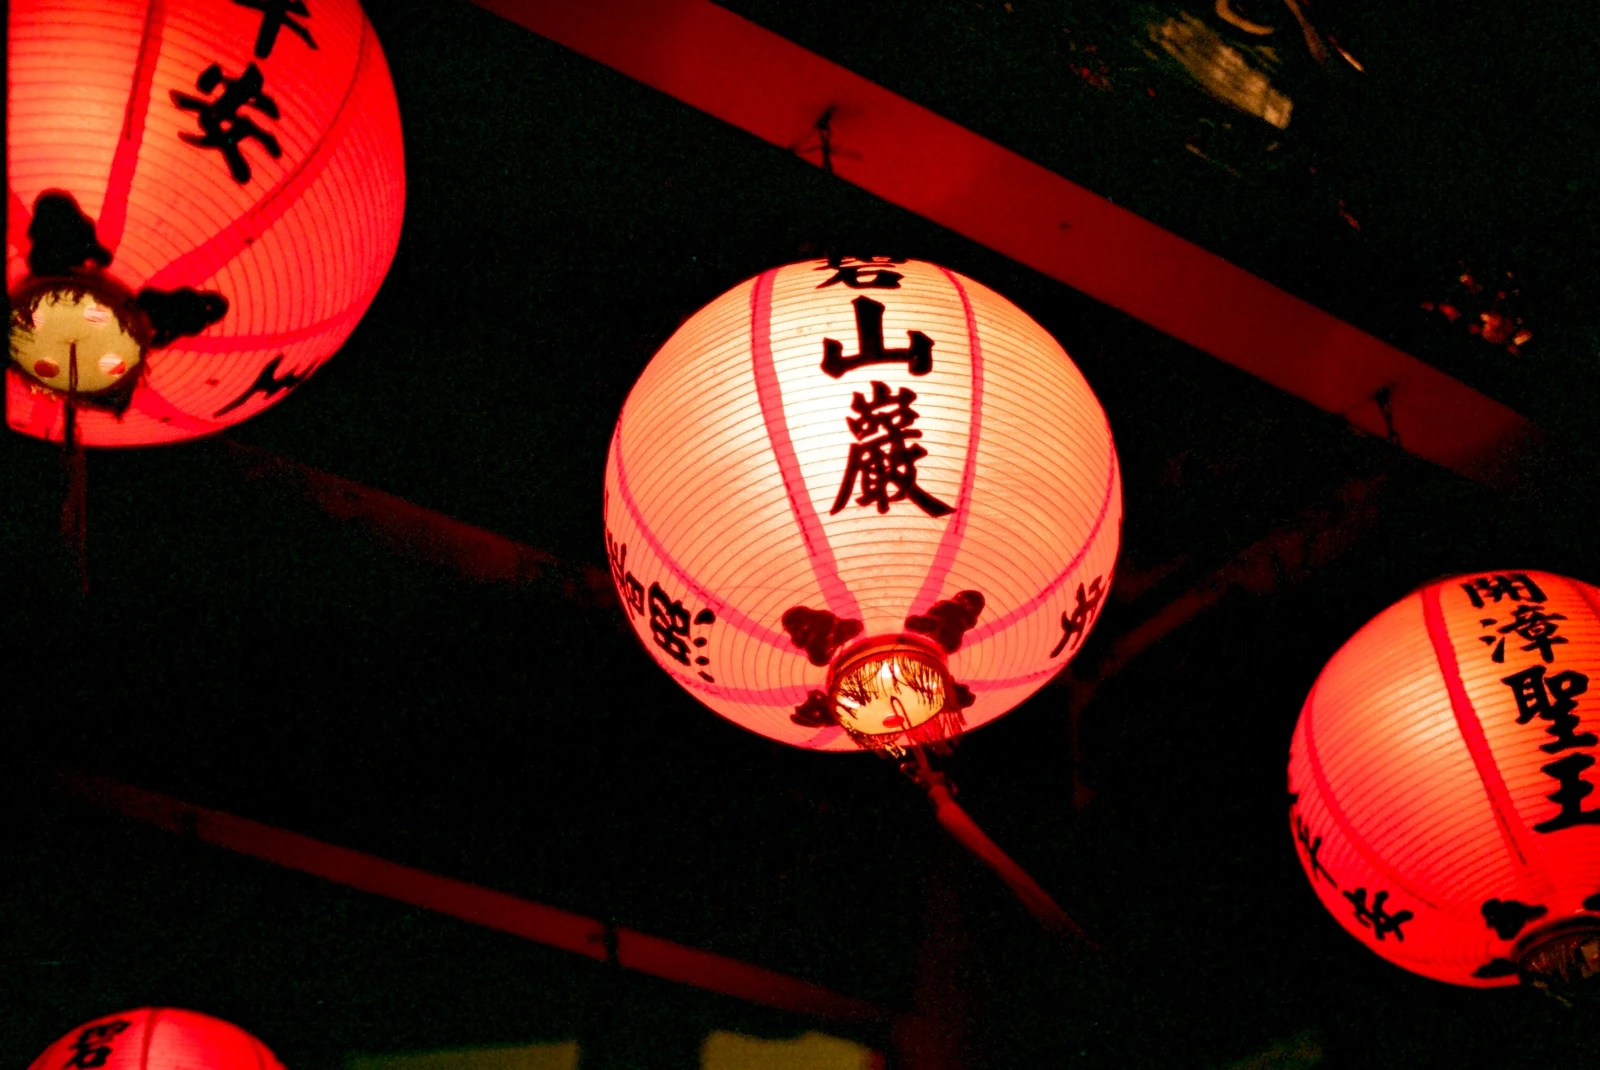 Lanterns hanging at night